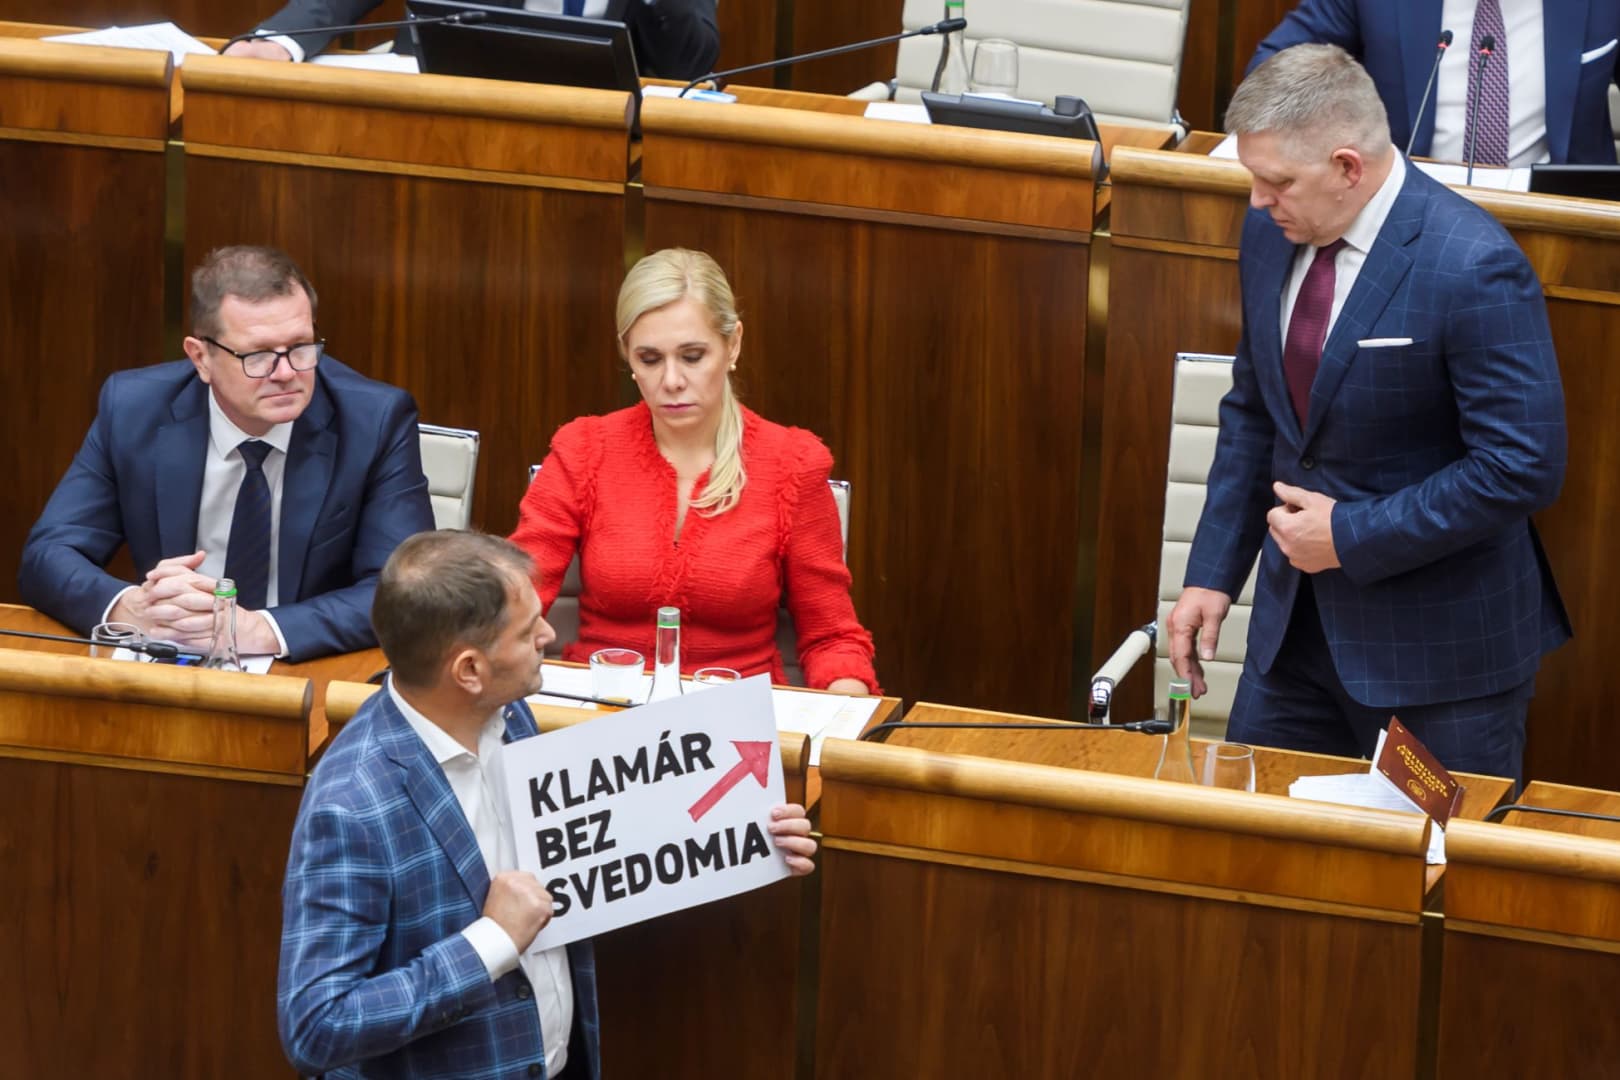 Matovič megint nem fért a bőrébe, Pellegrini betilthatja az élő sajtóbeszélgetéseket a parlament előcsarnokában